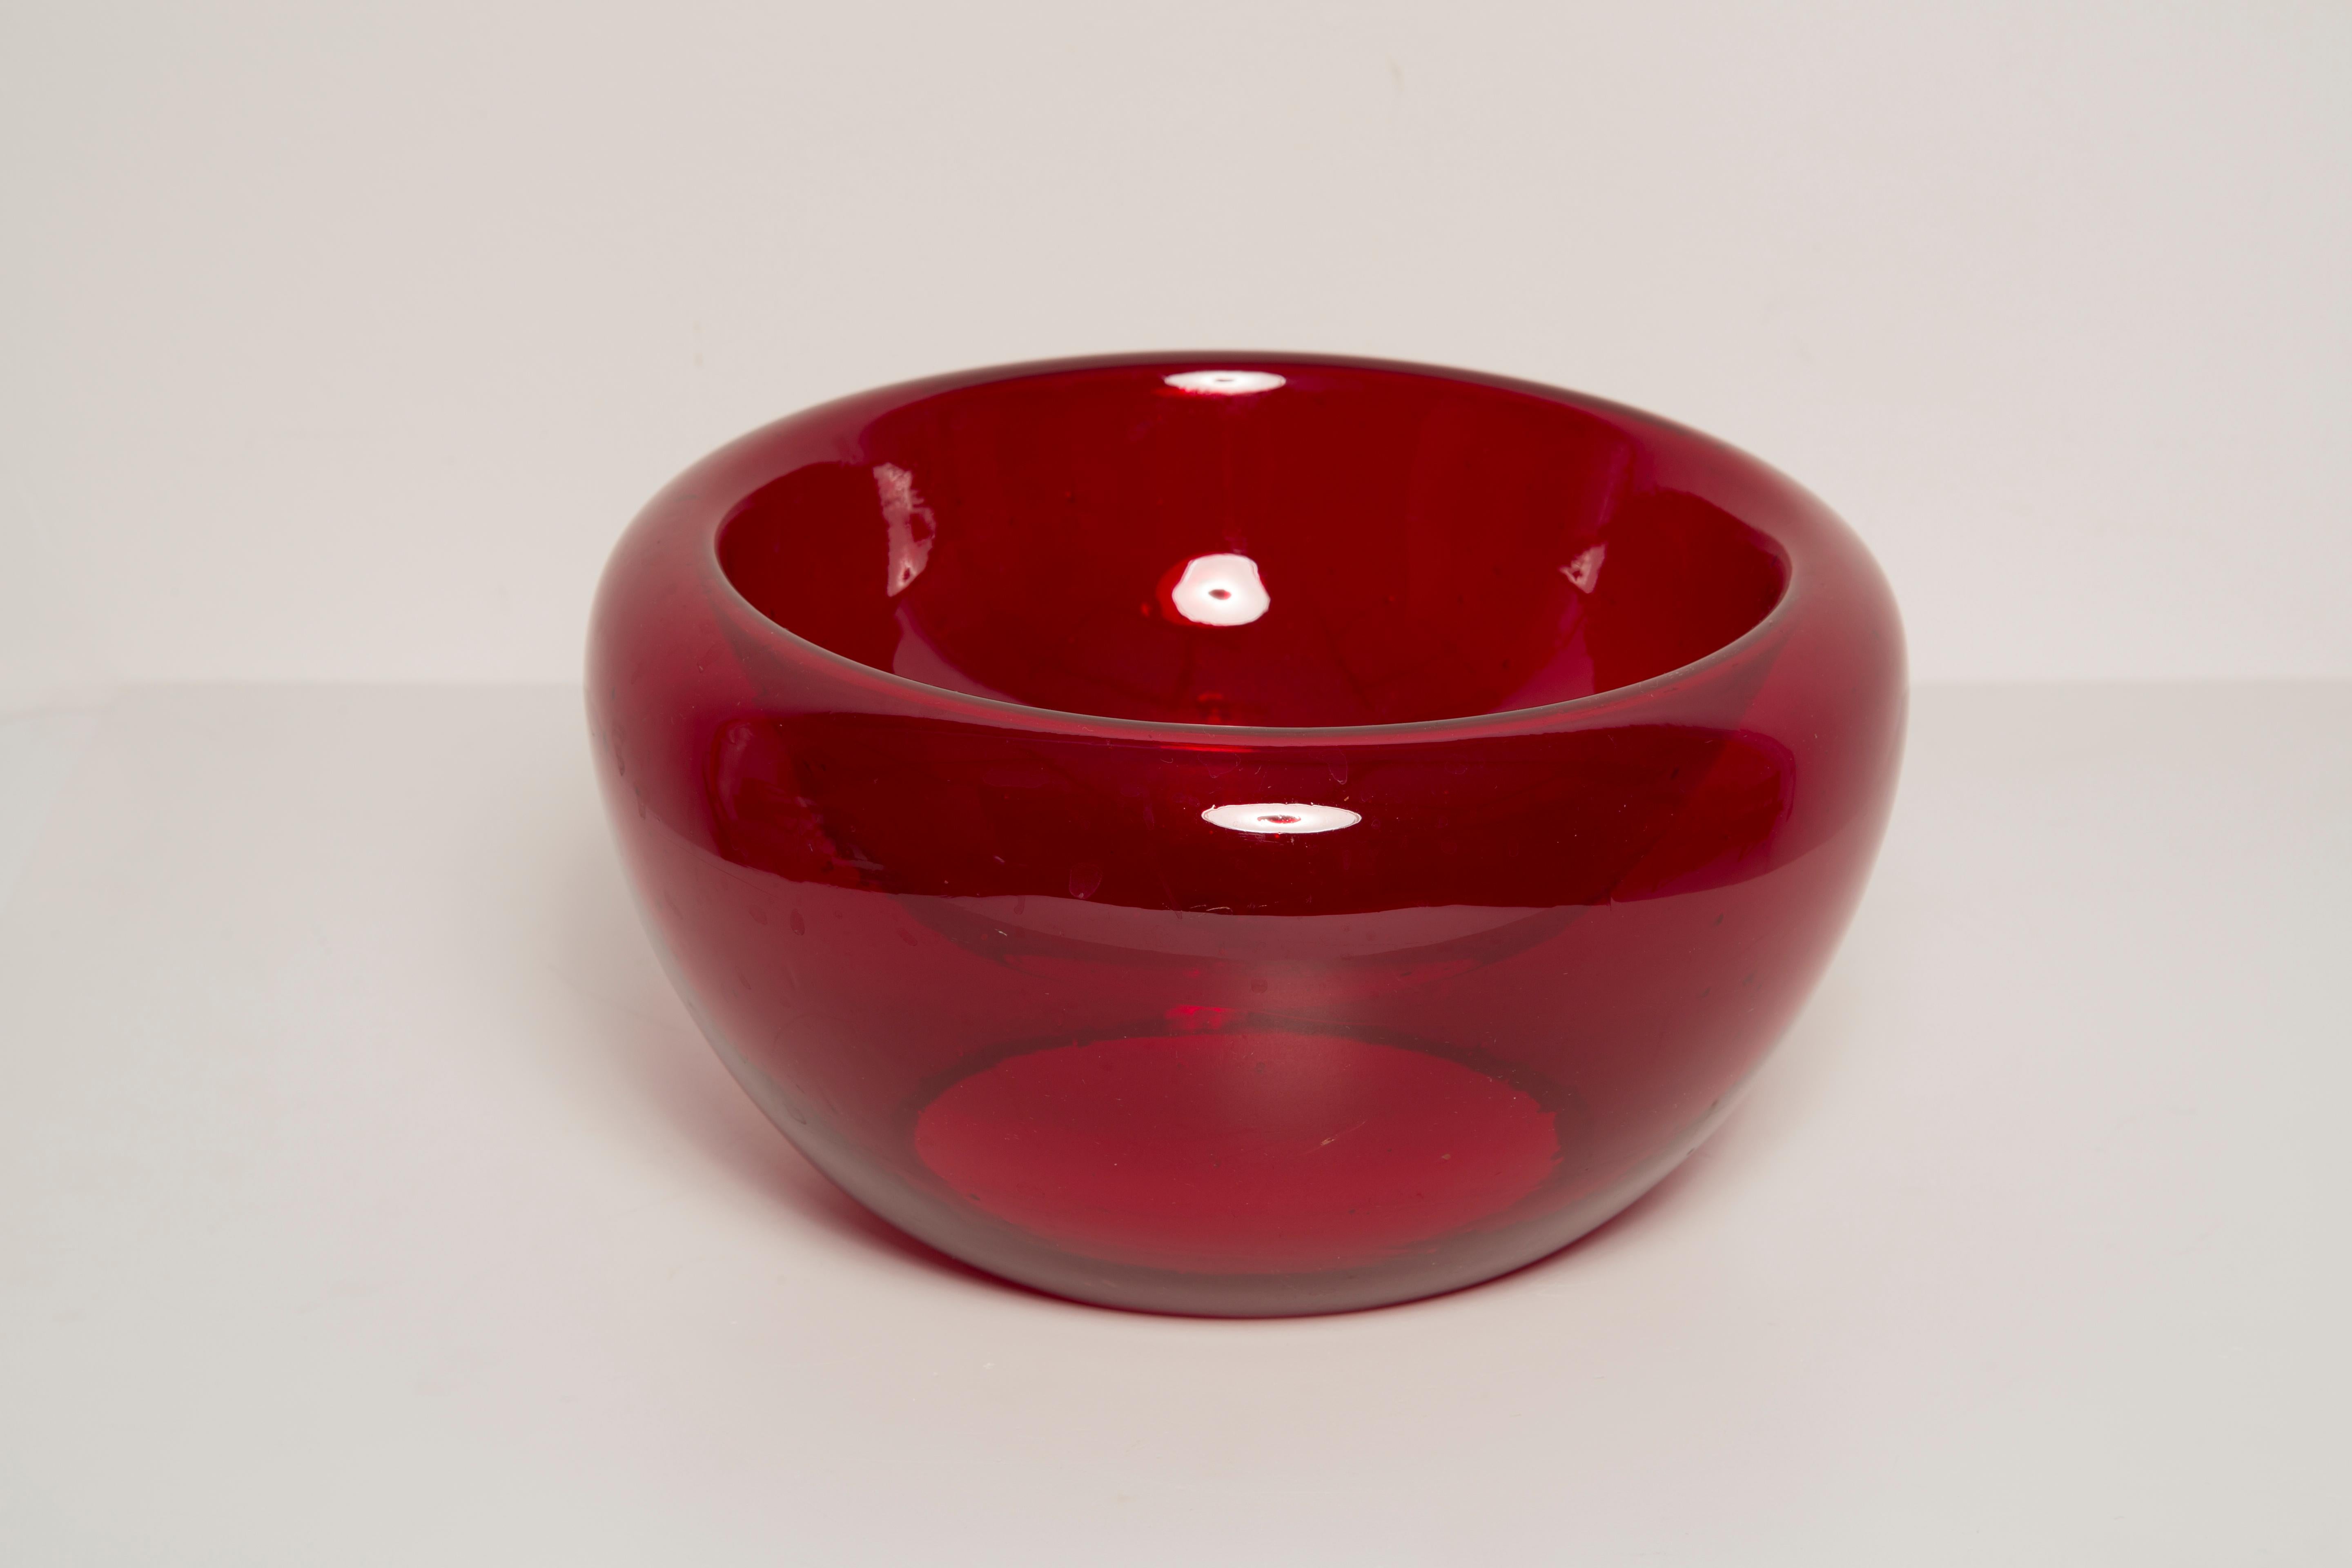 Schöner dekorativer roter Glasteller/Schüssel aus Italien. Teller ist in sehr gutem Vintage-Zustand, keine Schäden oder Risse. Original Glas. Einzigartiges Stück für jeden Tisch und jede Einrichtung! Nur ein Stück verfügbar.